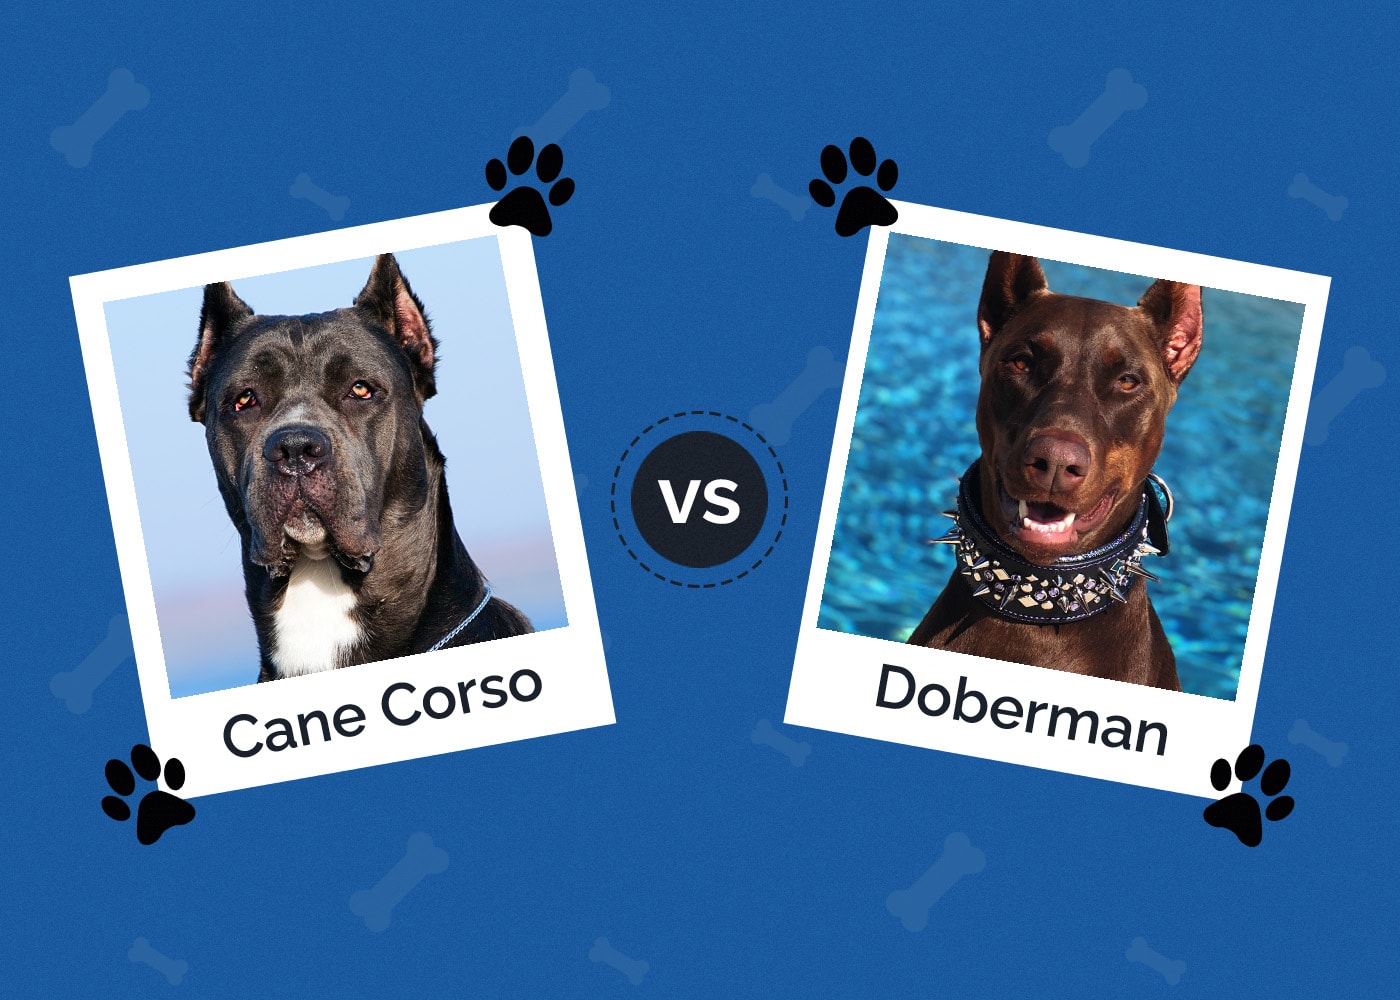 Cane Corso vs Doberman